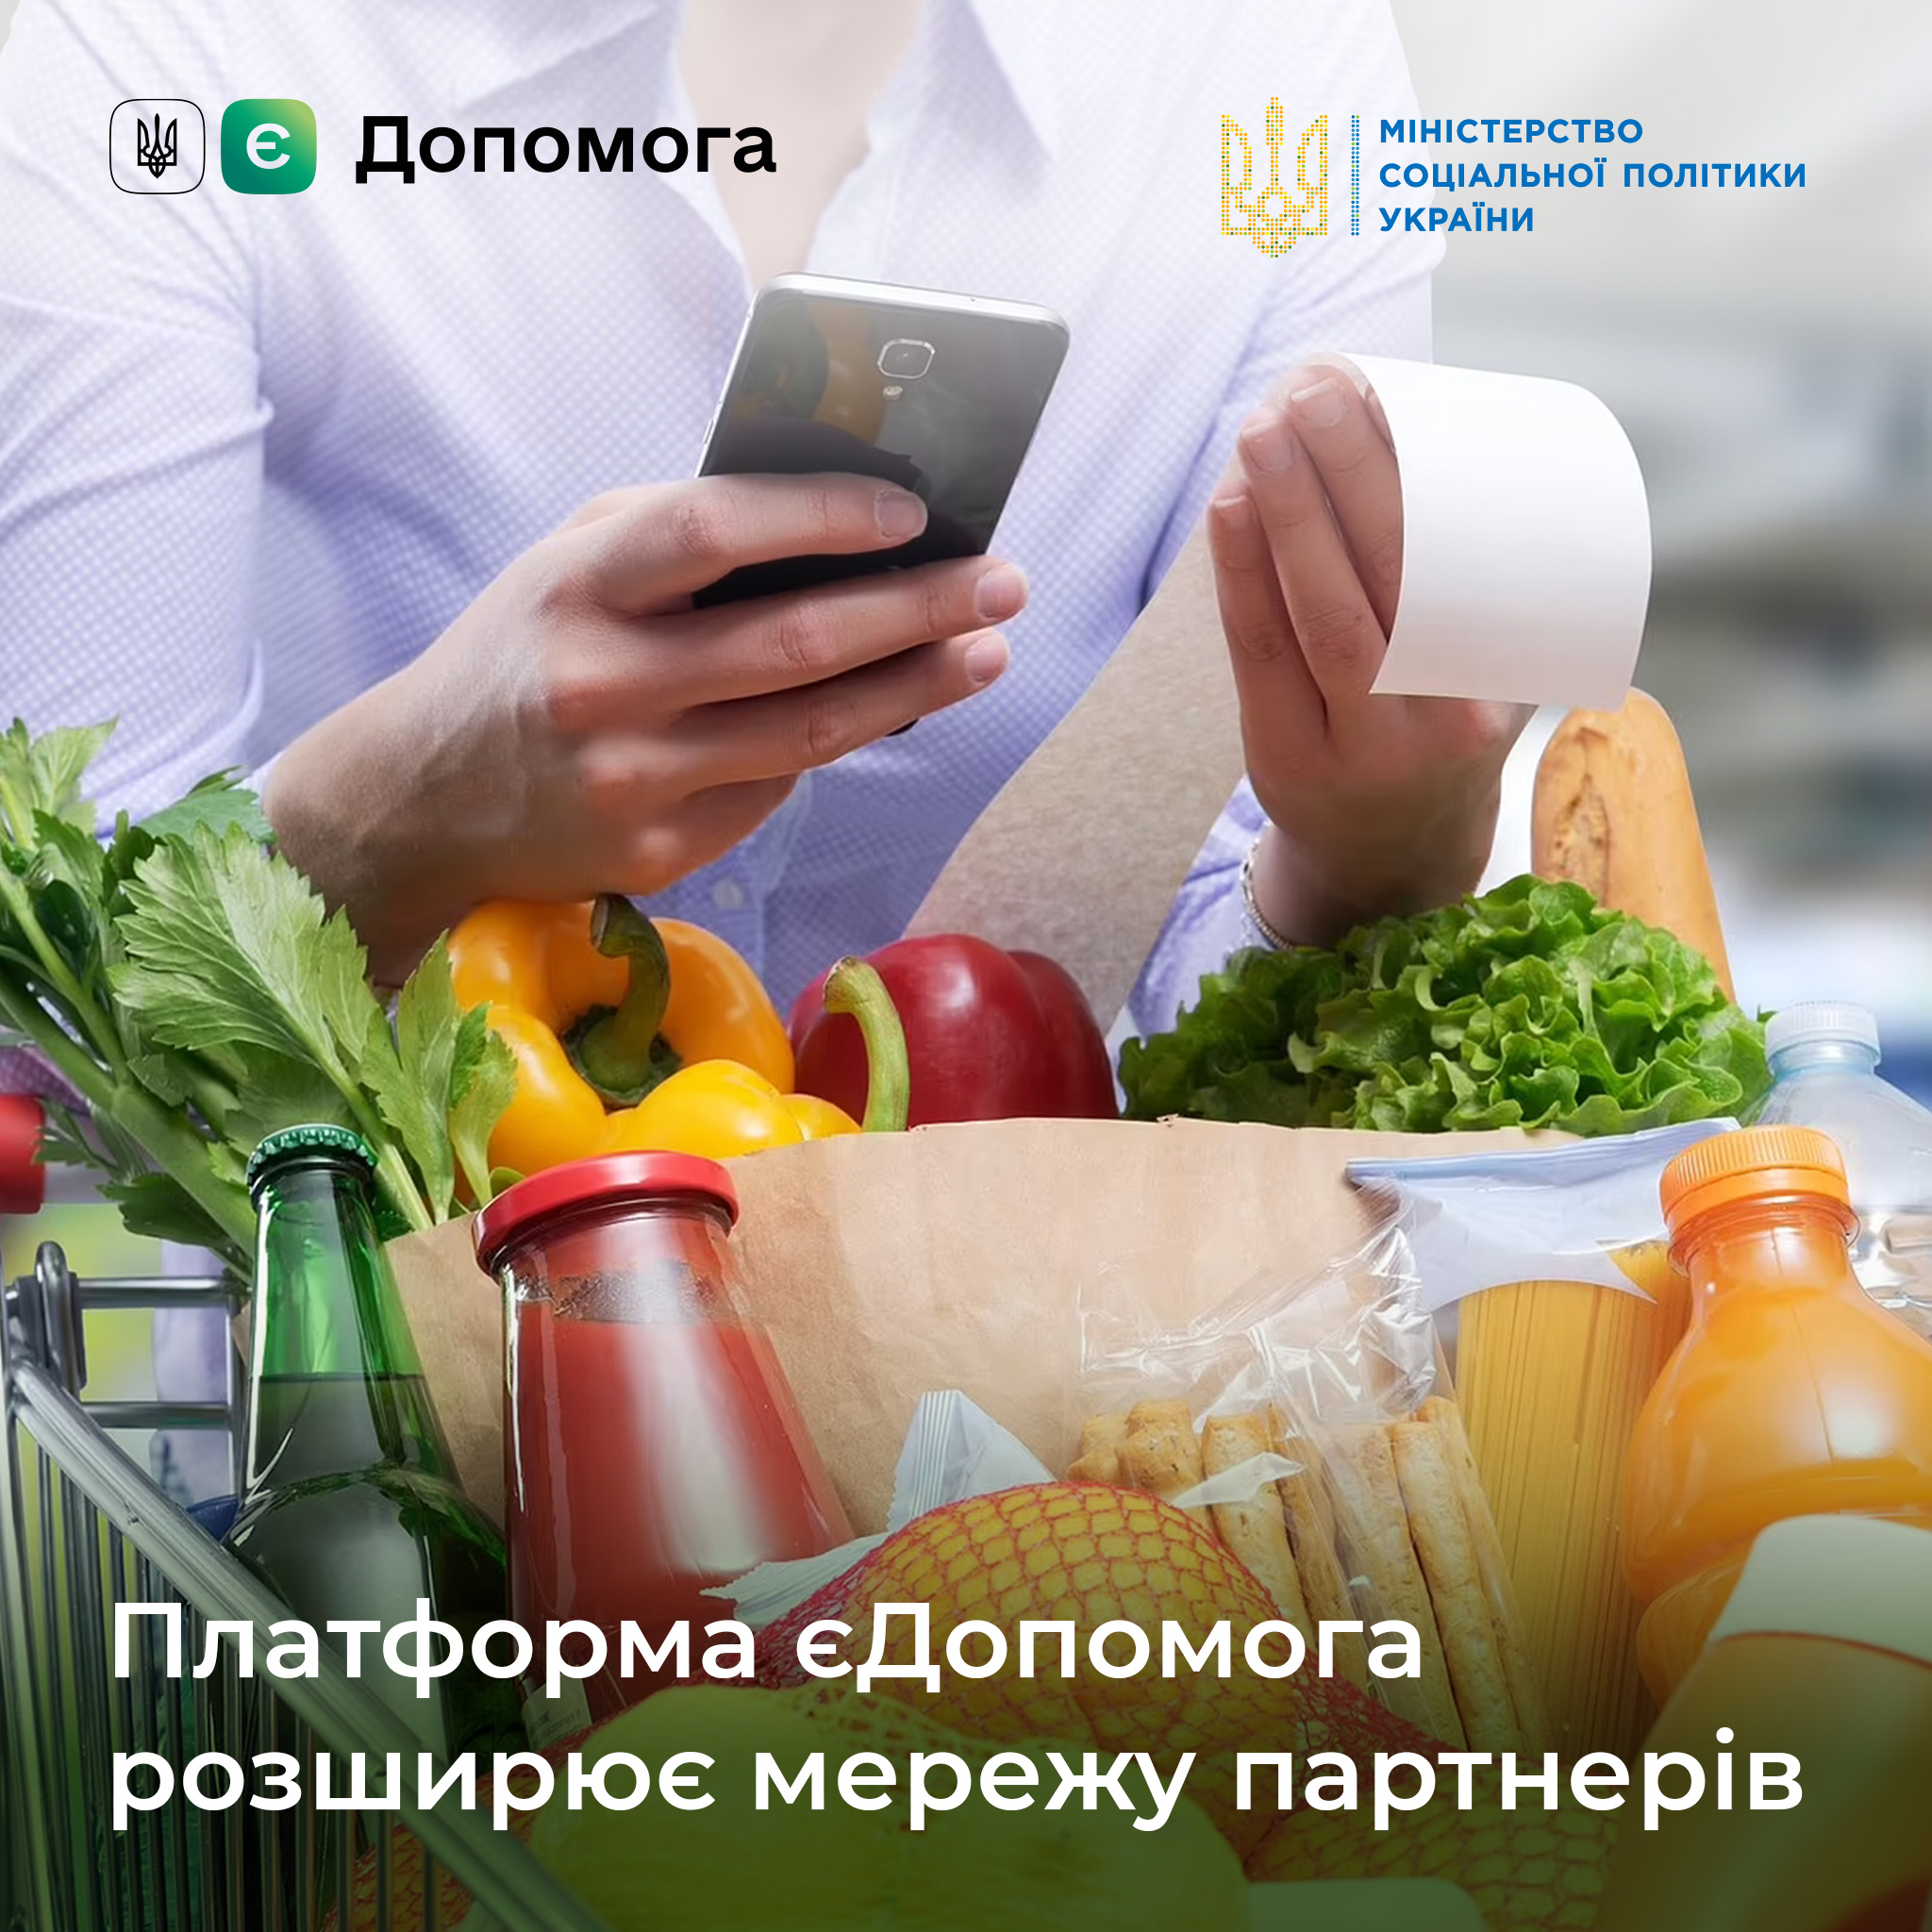 АТБ безкоштовно видає продукти українцям через платформу “єДопомога“